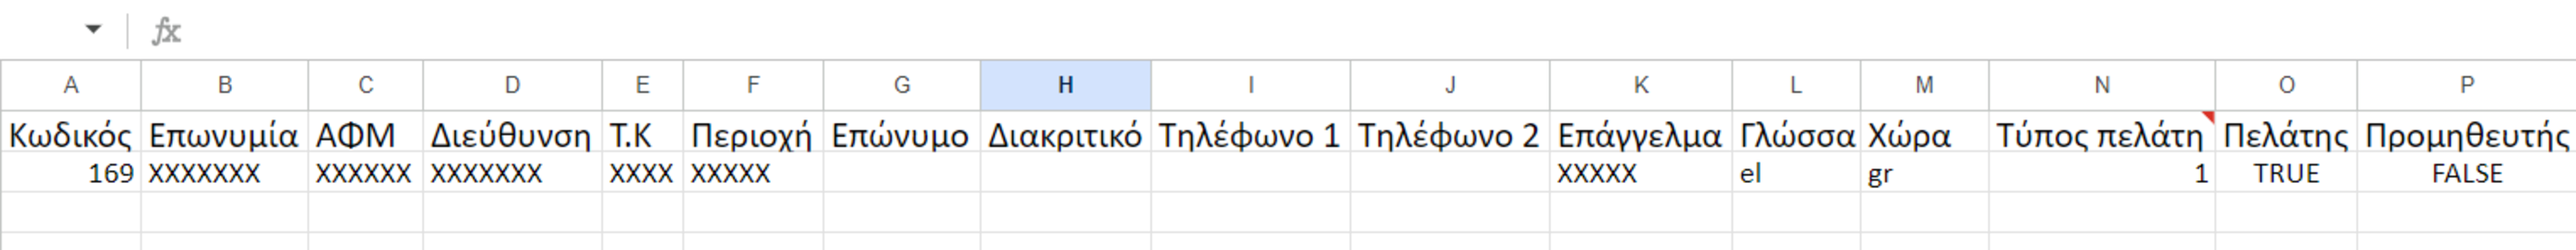 Παράδειγμα κεφαλίδων αρχείου Excel που περιέχουν επαφές